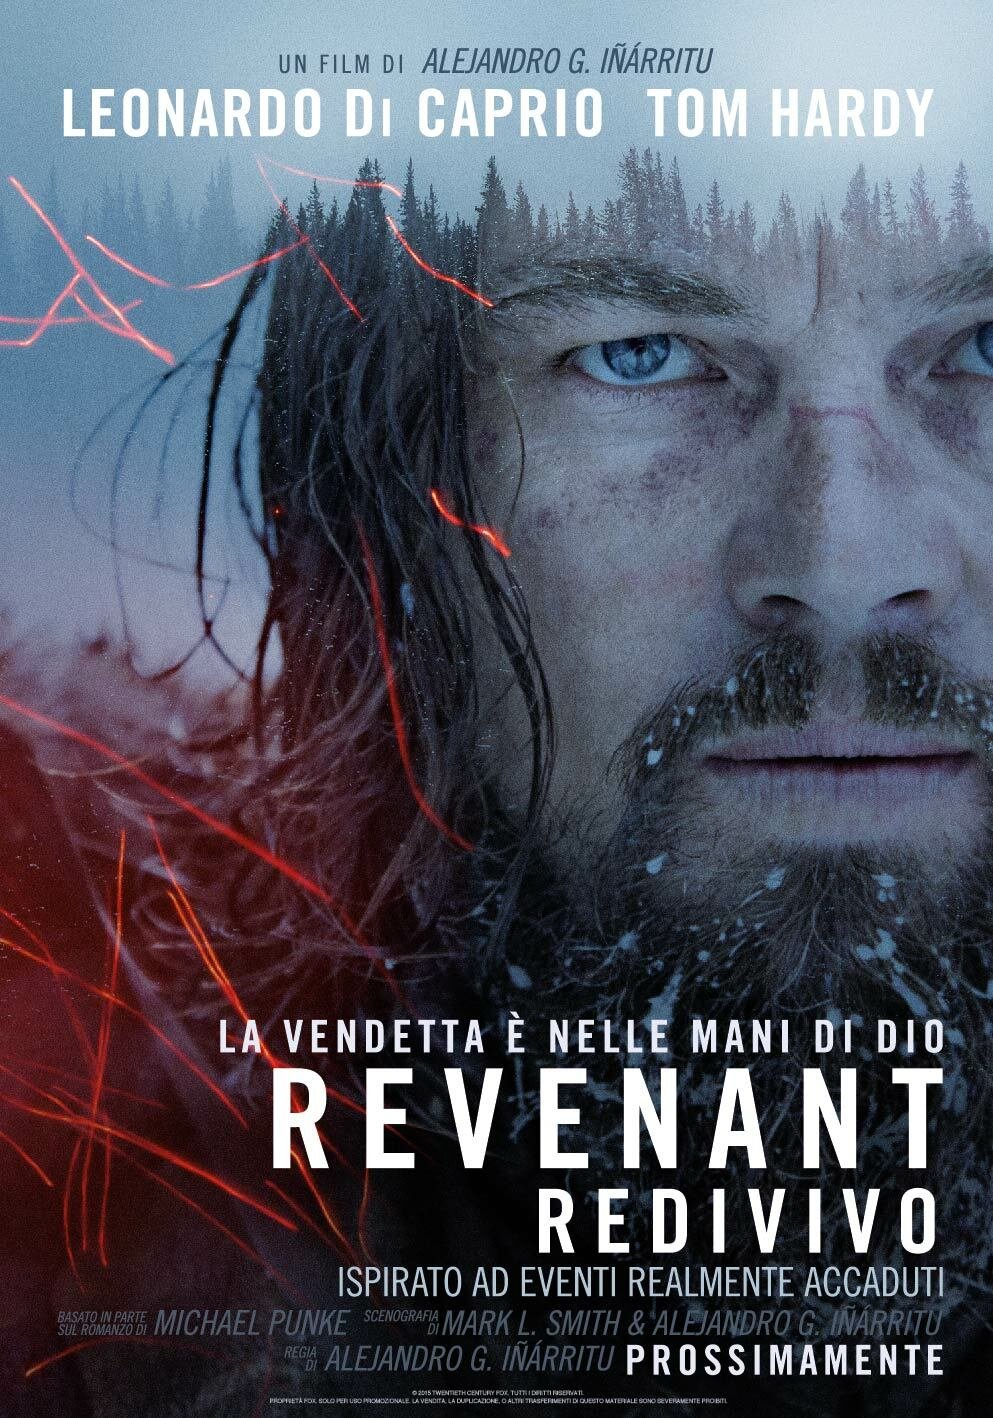 La locandina del film Revenant - Redivivo